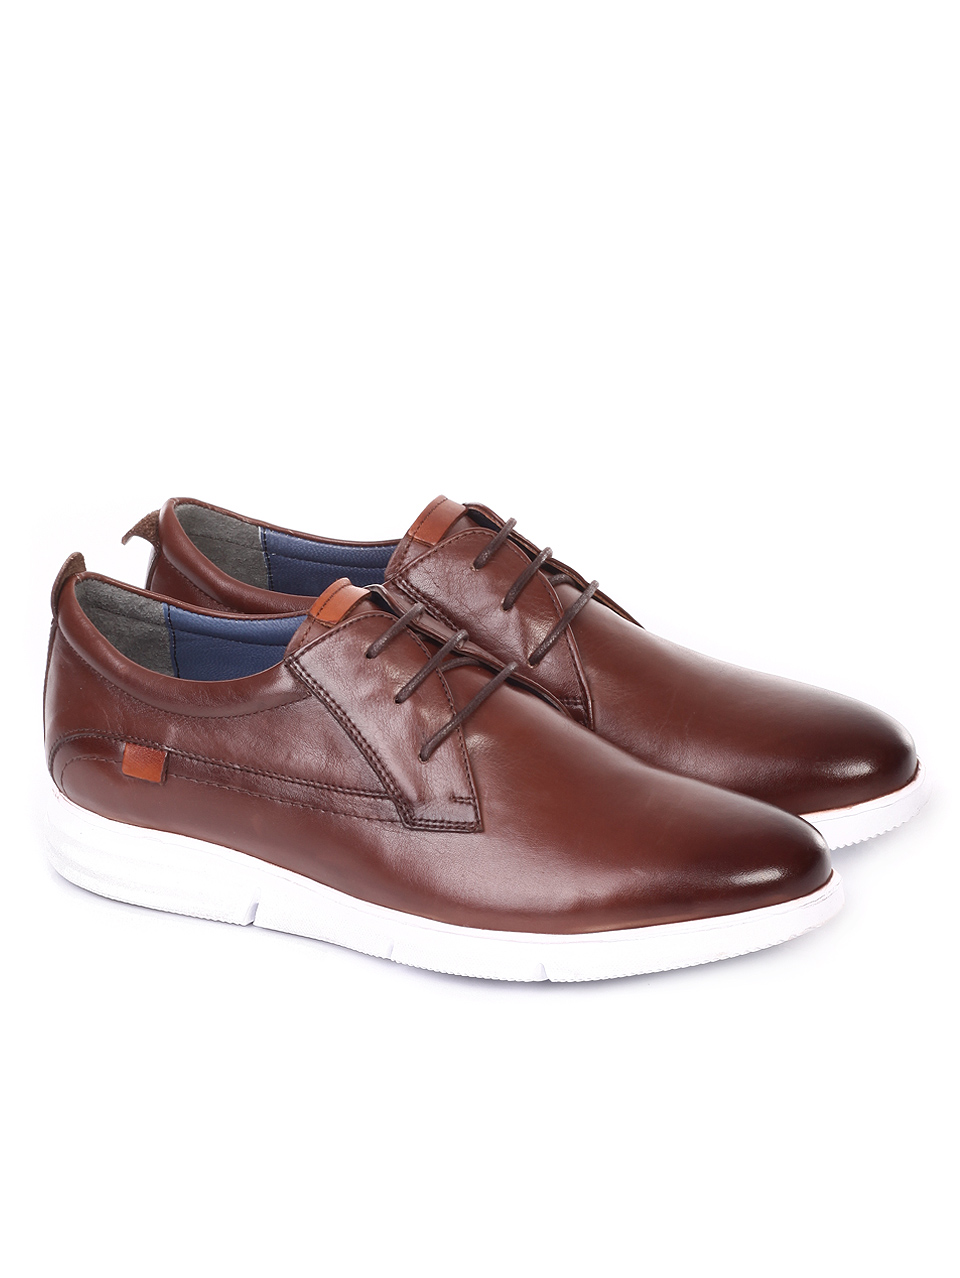 Ежедневни мъжки обувки от естествена кожа 7AT-19434 brown